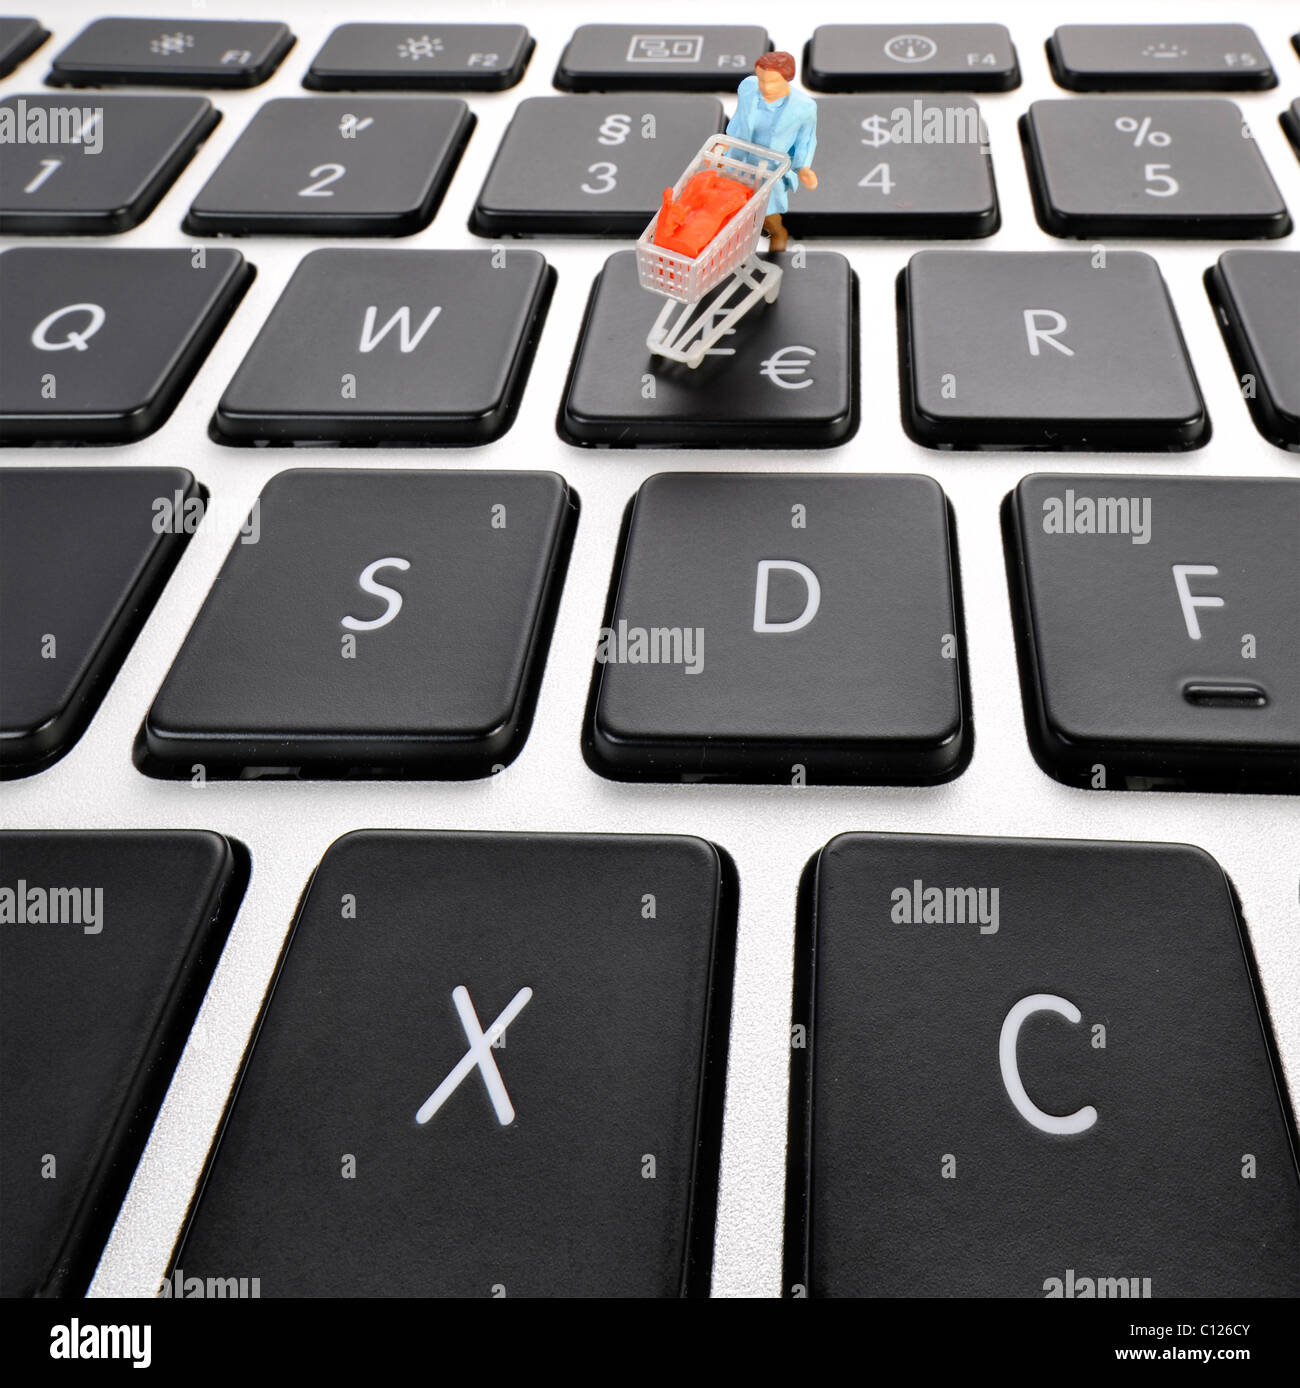 Figura in miniatura con carrello sulla tastiera, il simbolo euro, immagine  simbolica per lo shopping online Foto stock - Alamy